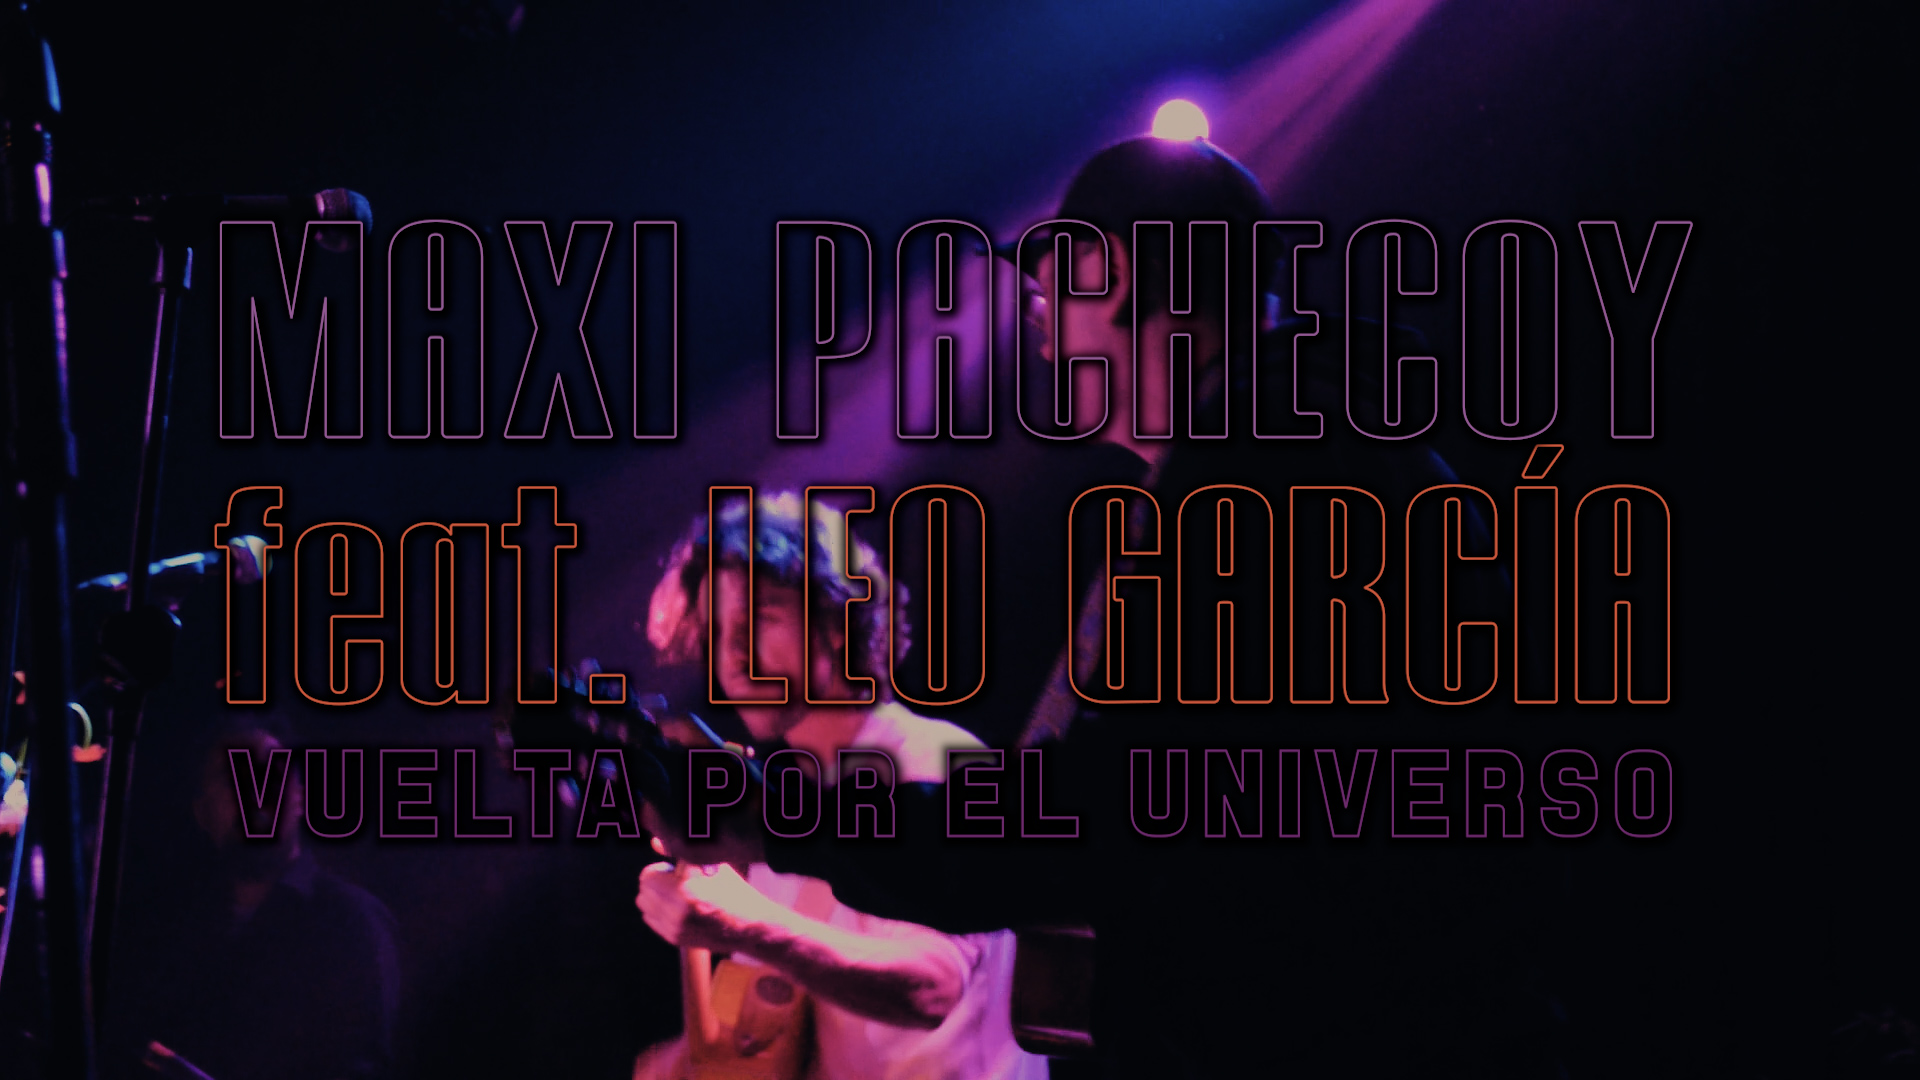 Maxi Pachecoy | Vuelta por el universo